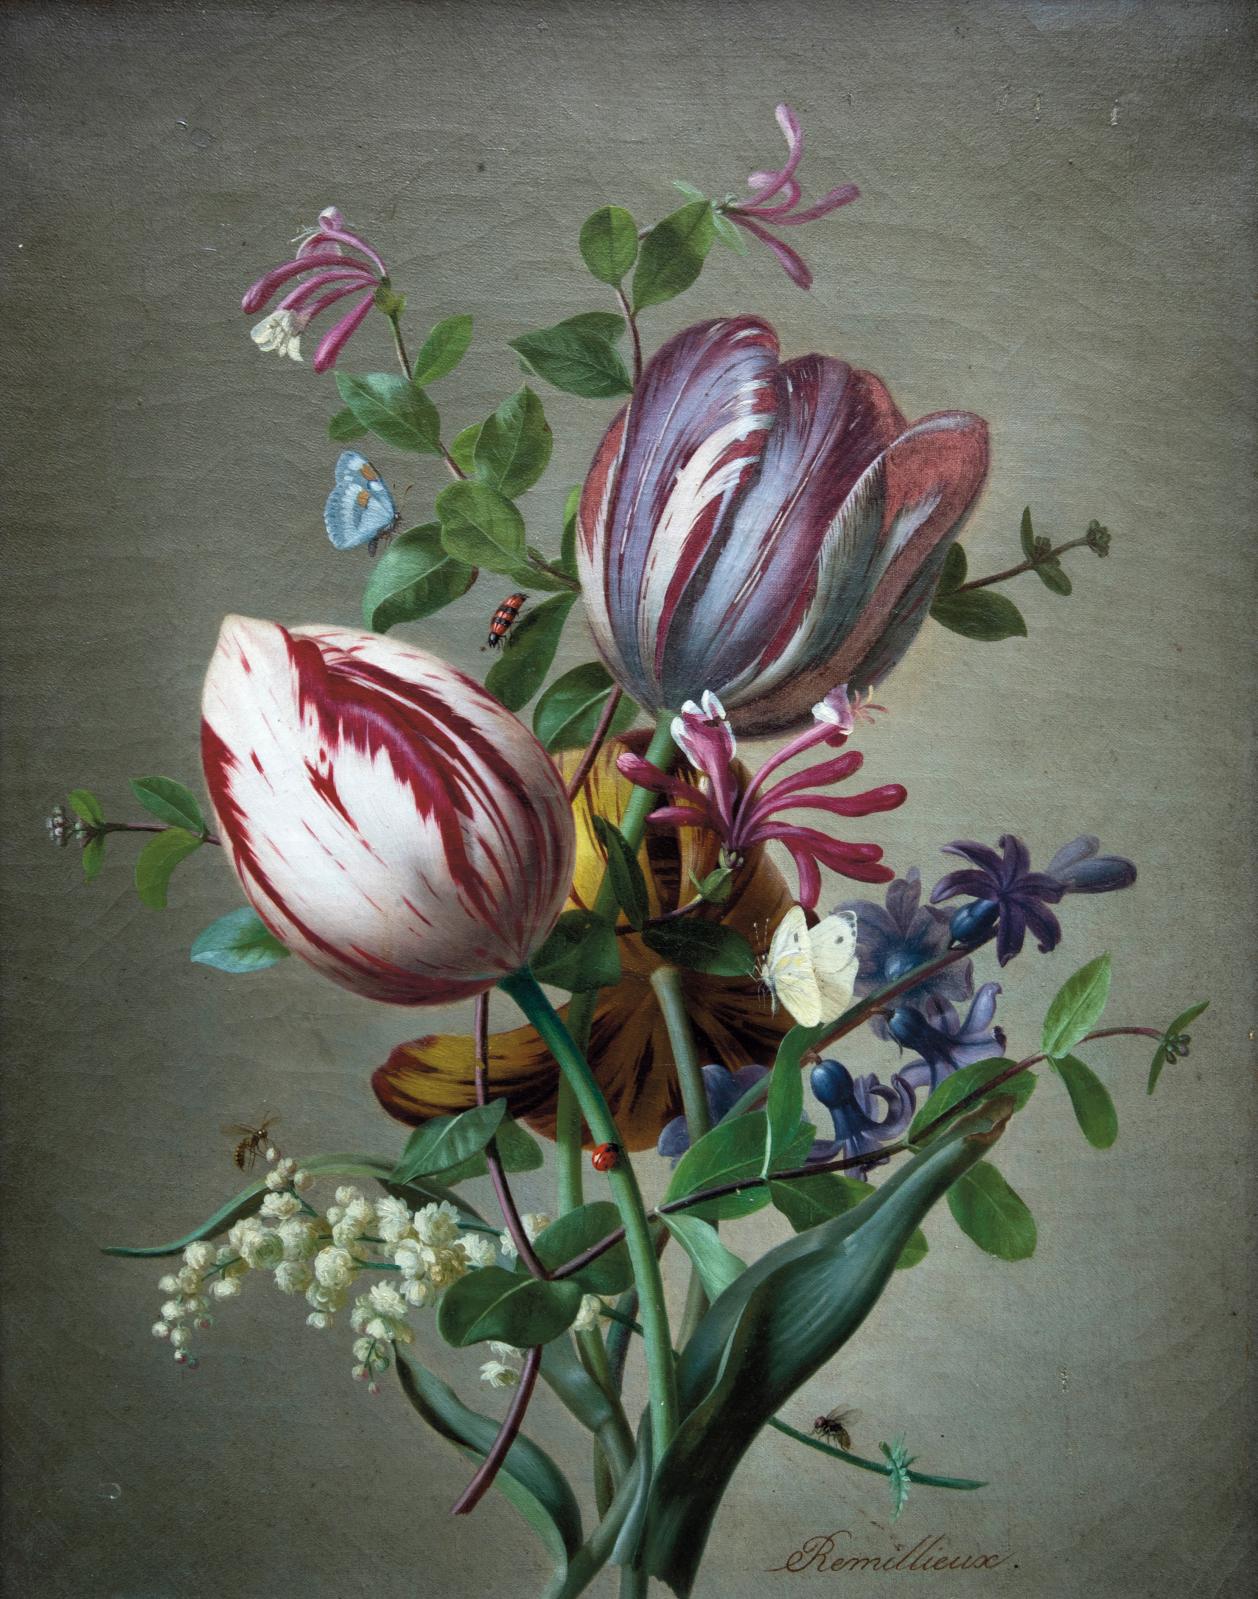 Un bouquet printanier lyonnais de Pierre Étienne Rémillieux